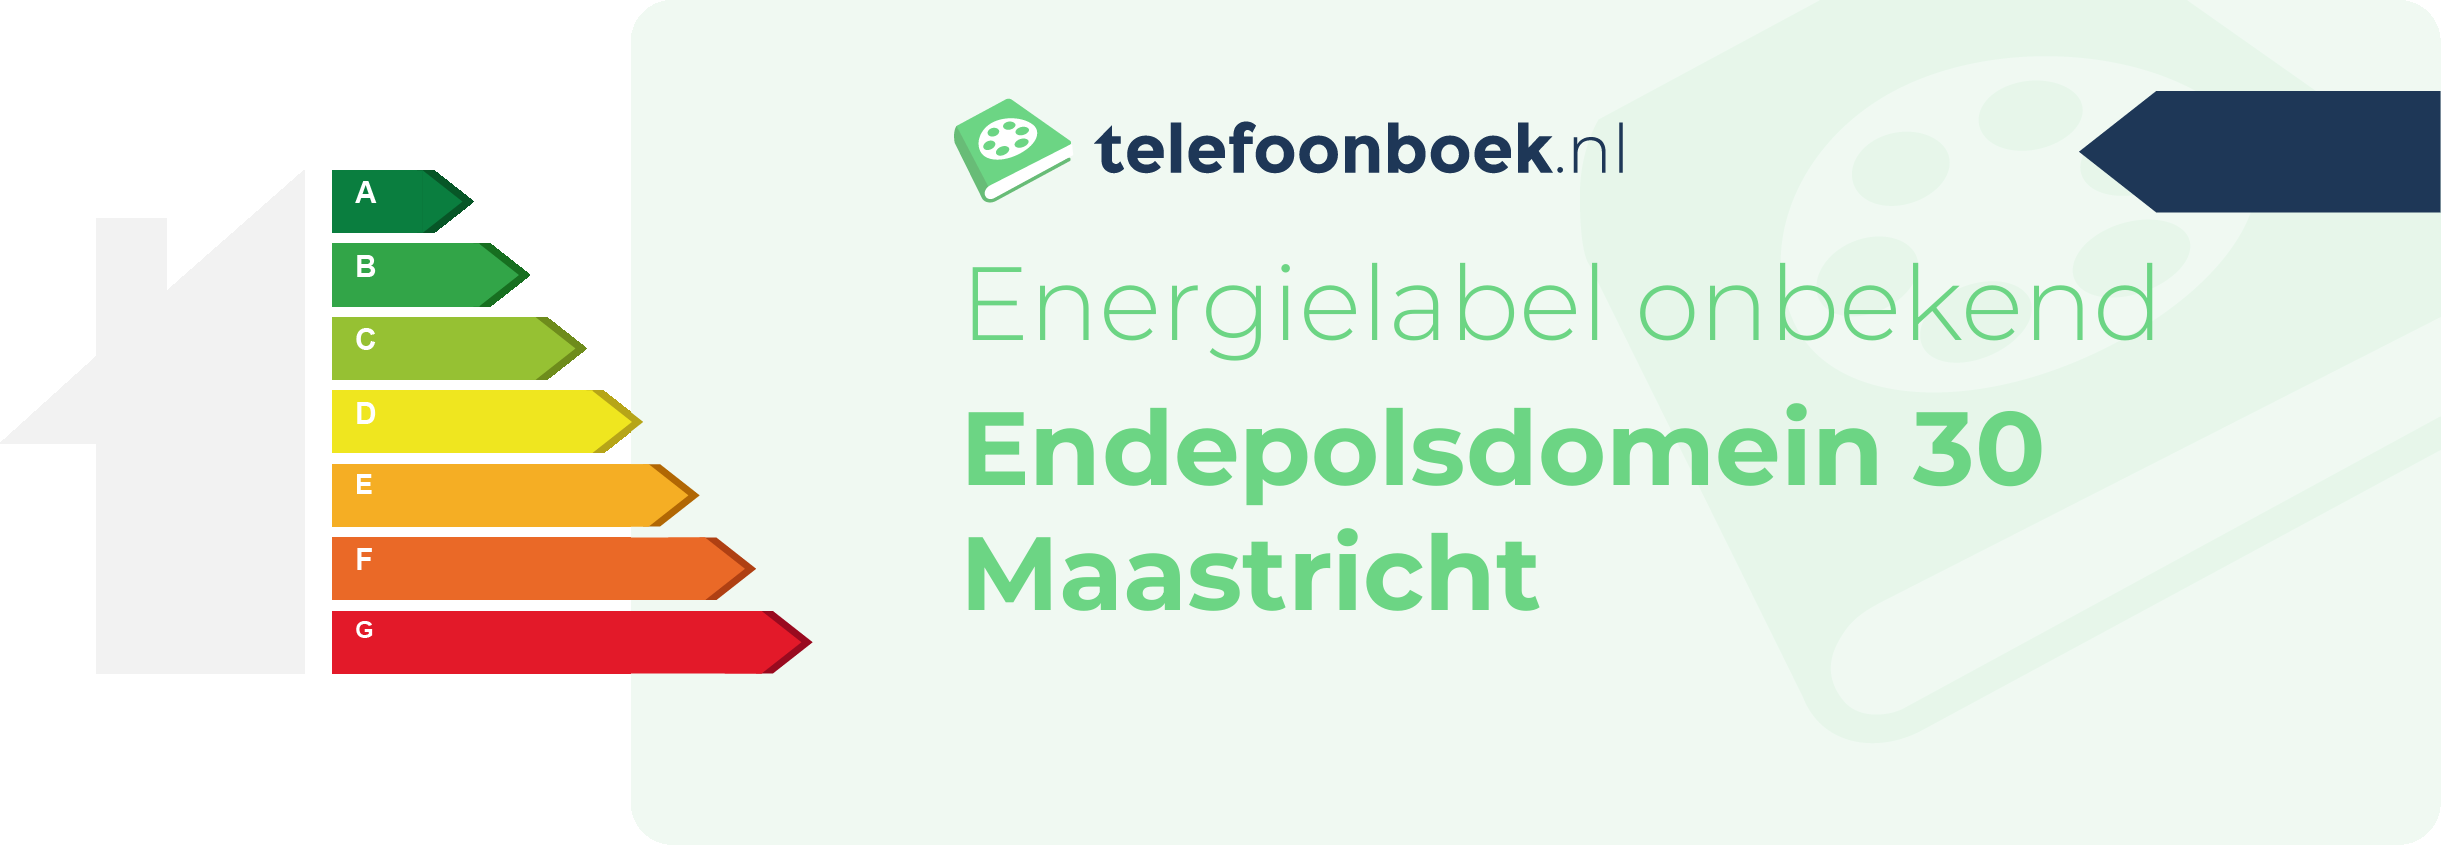 Energielabel Endepolsdomein 30 Maastricht